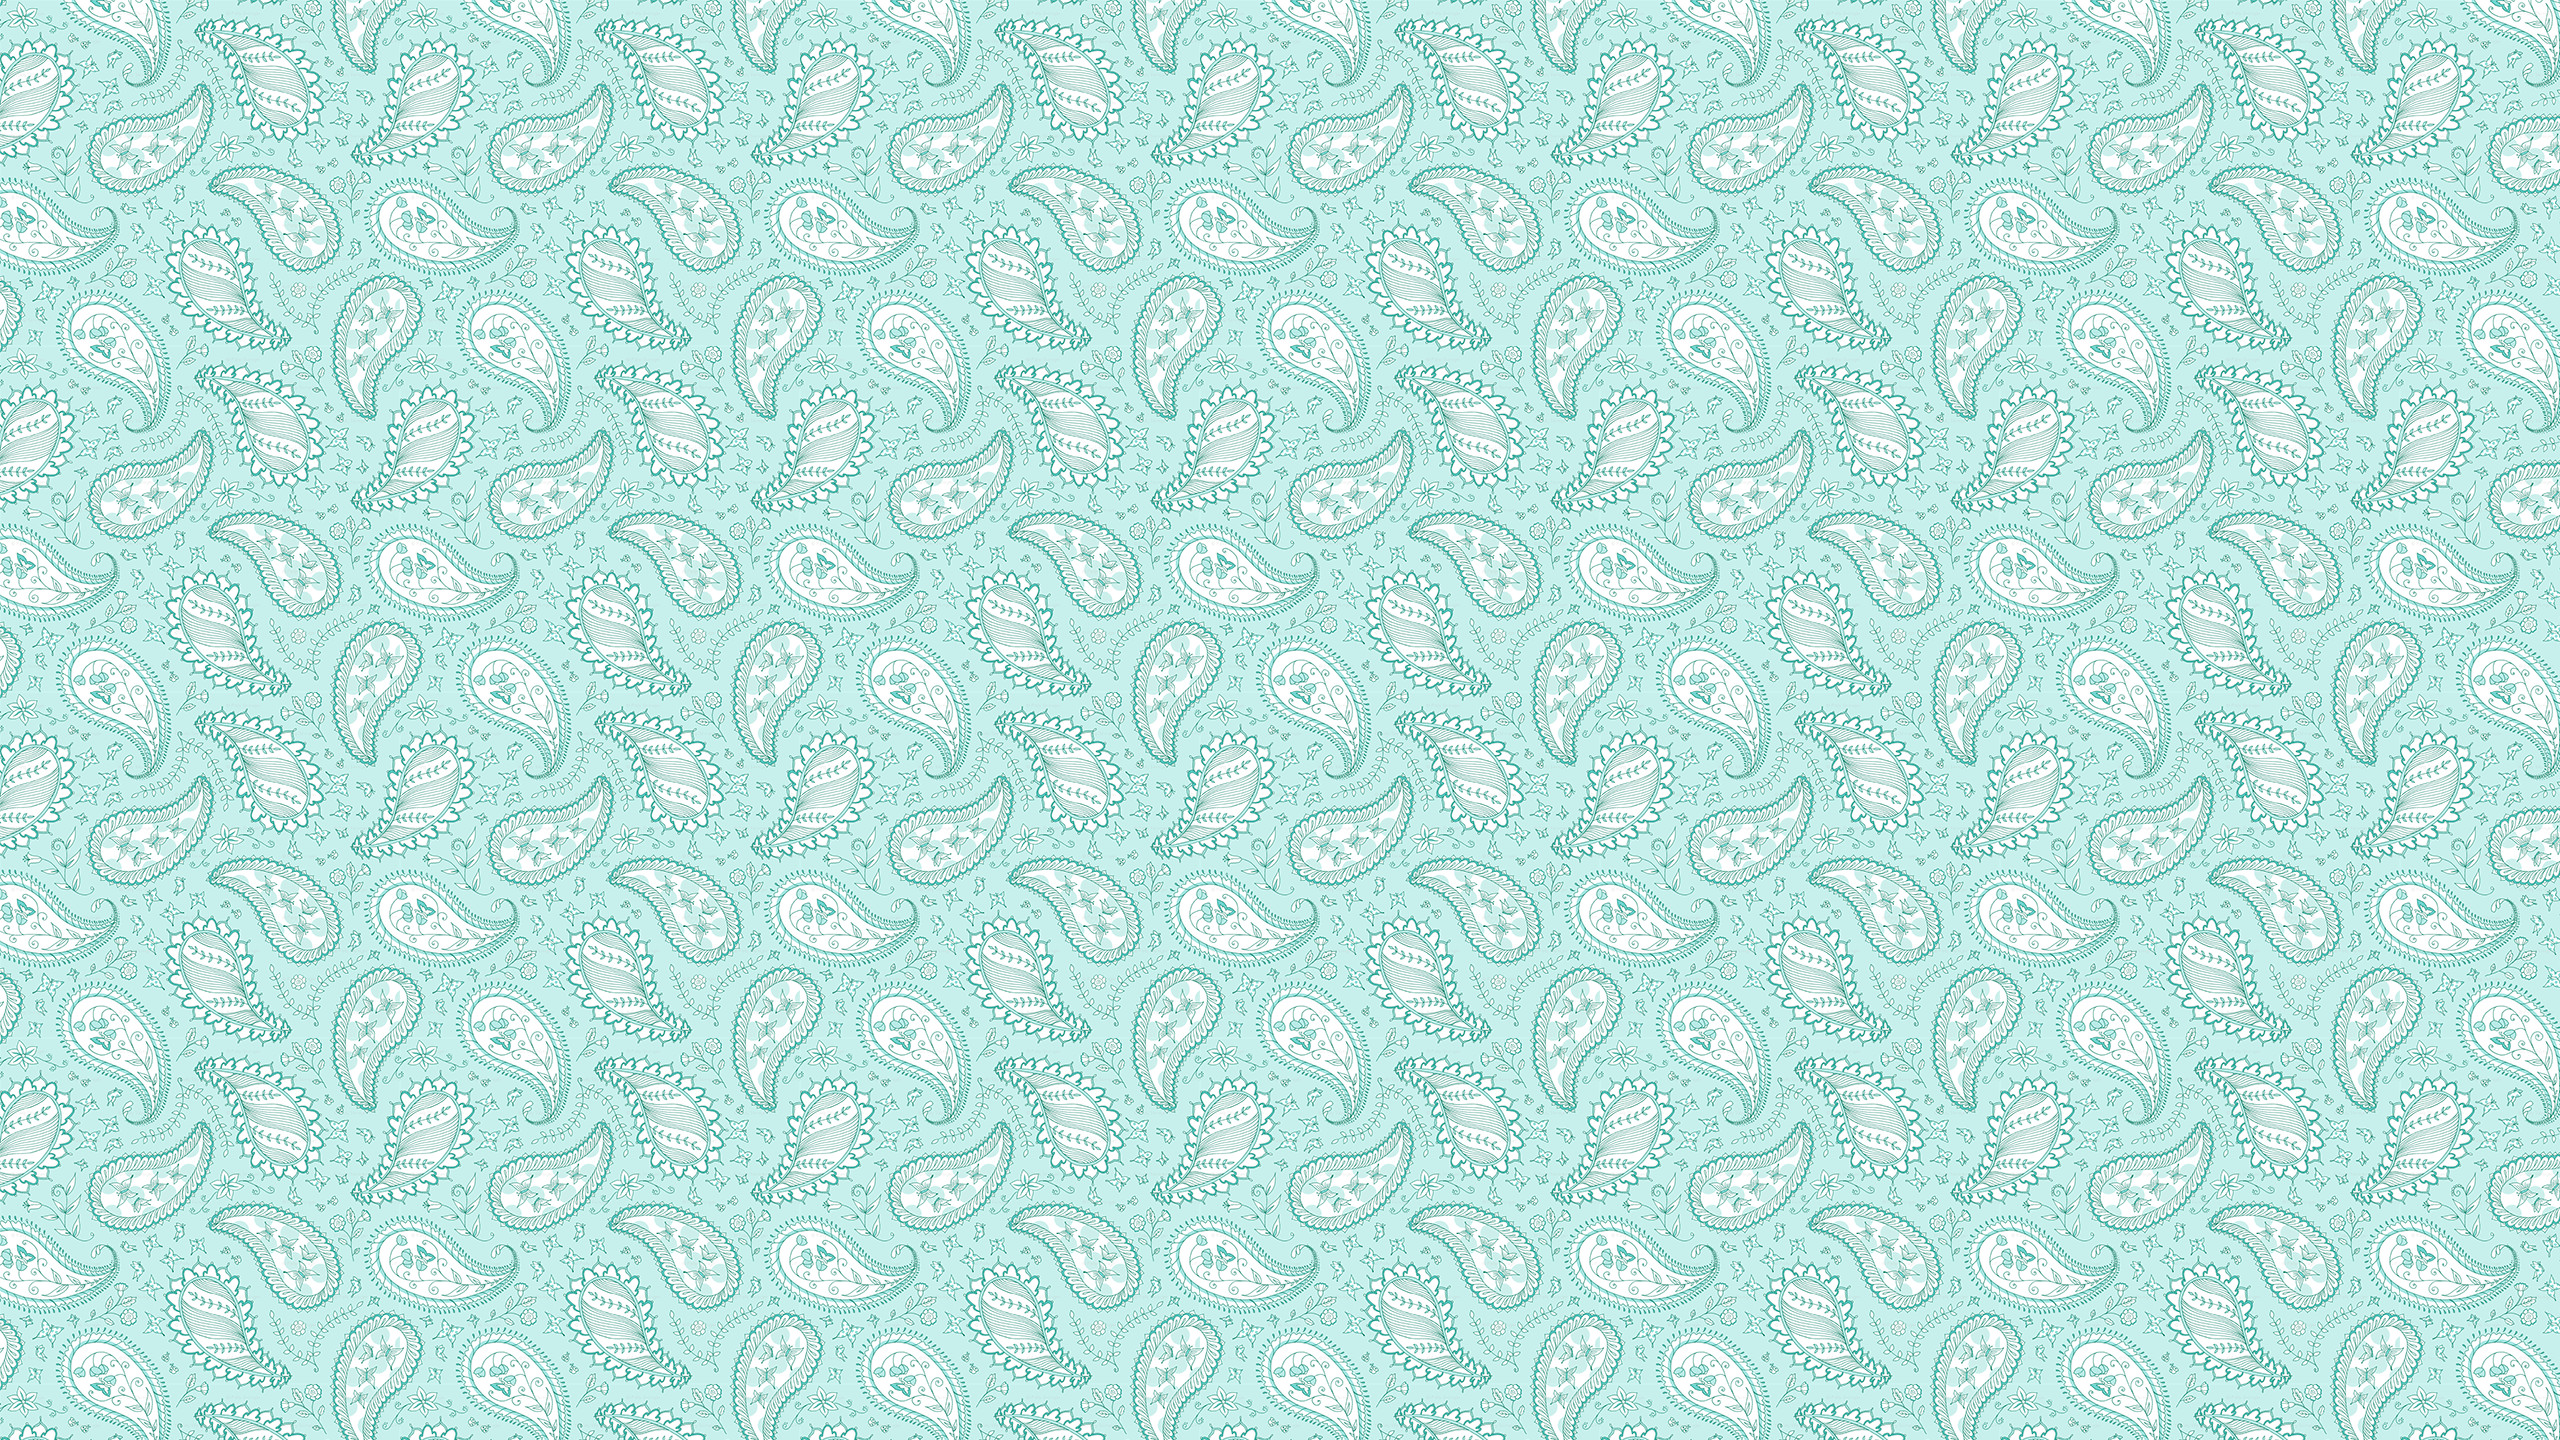 2560x1440 Mint Paisley Desktop Wallpaper | Tech Wallpapers | Pinterest .